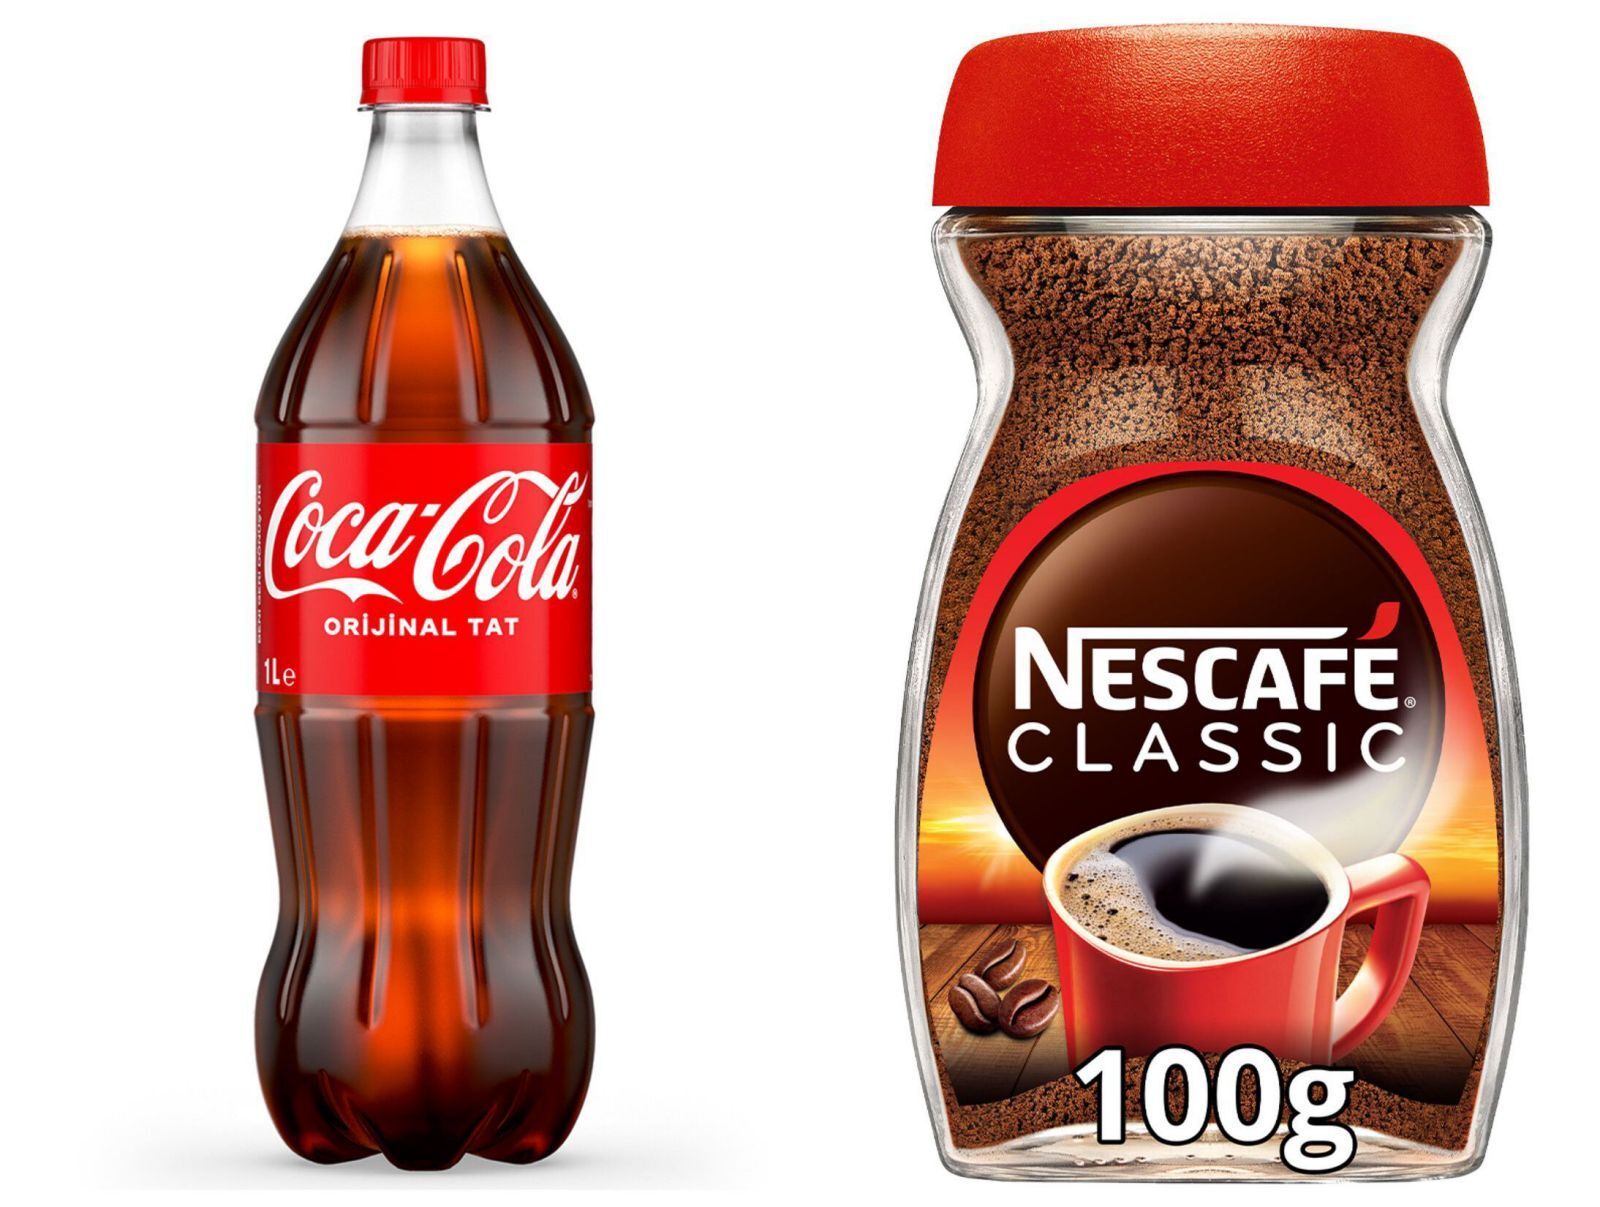 Coca-Cola and Nescafe